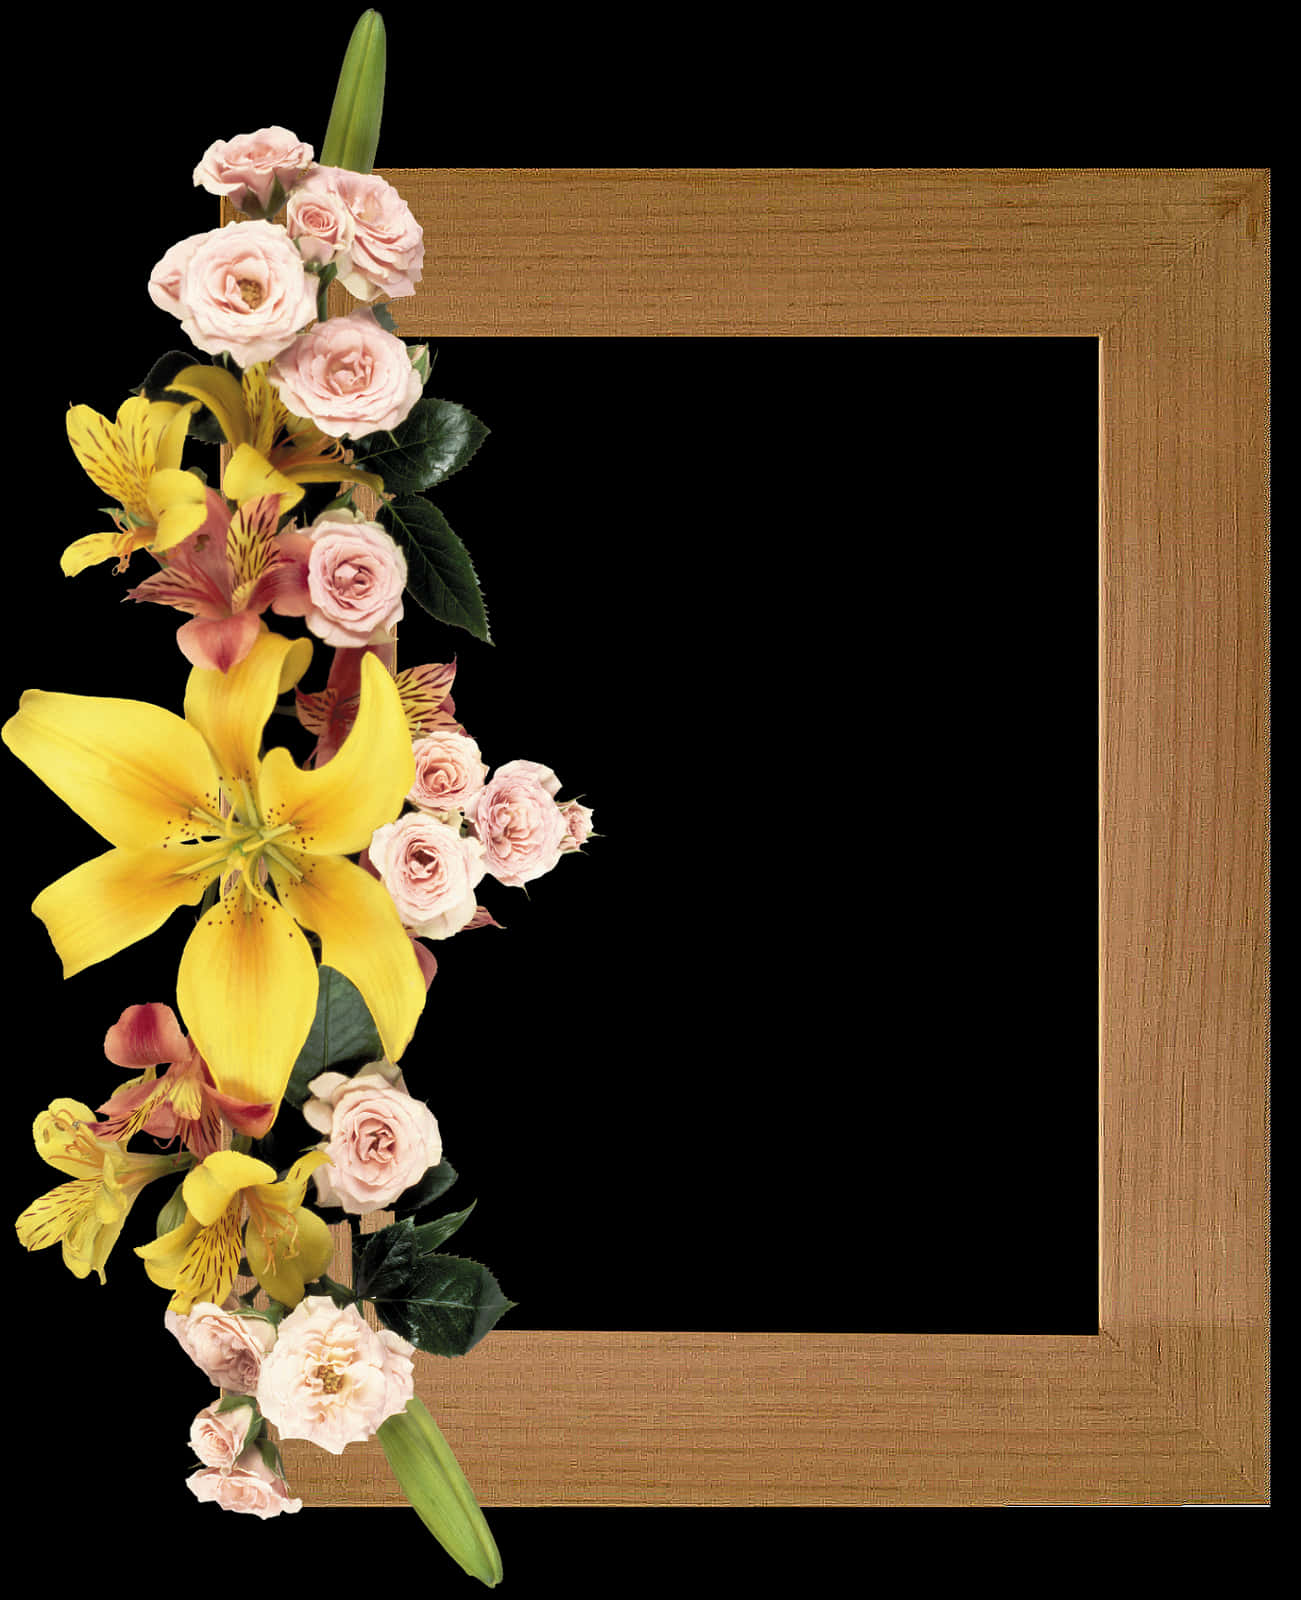 Floral Embellished Wooden Frame PNG image